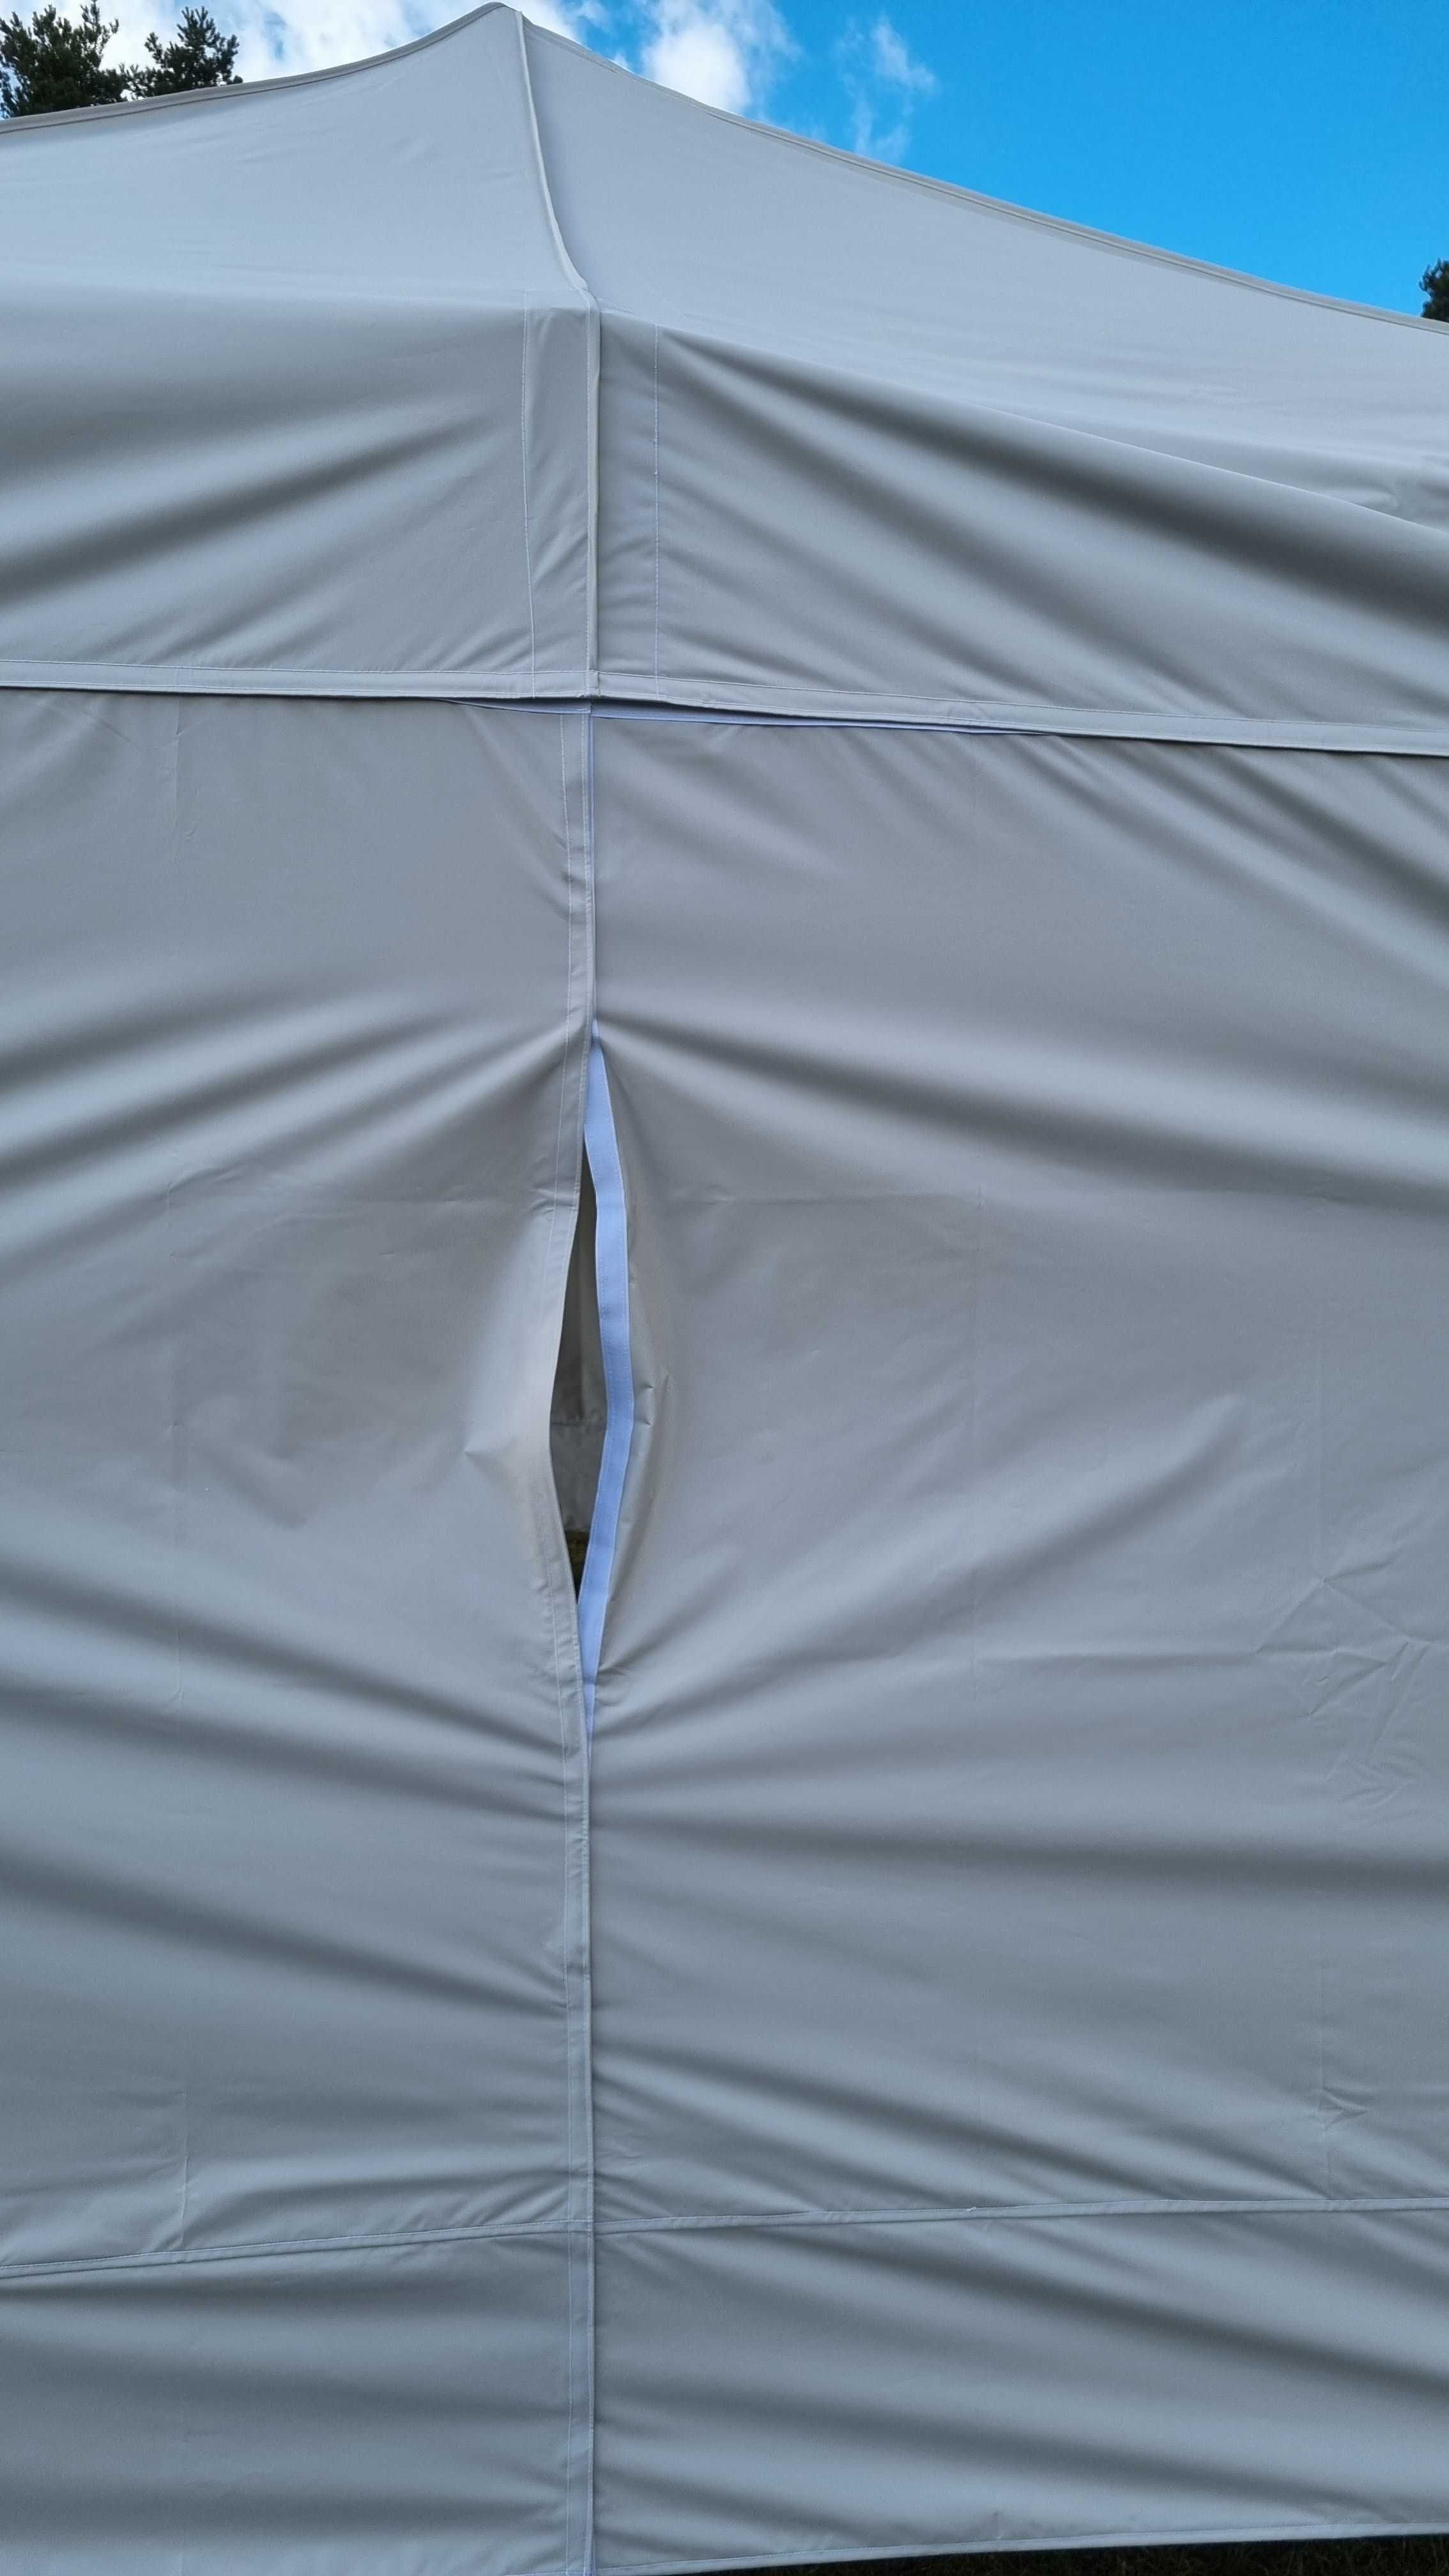 Namiot spawalniczy 2x2 (stal) namiot roboczy, zgrzewanie rur. ATEST